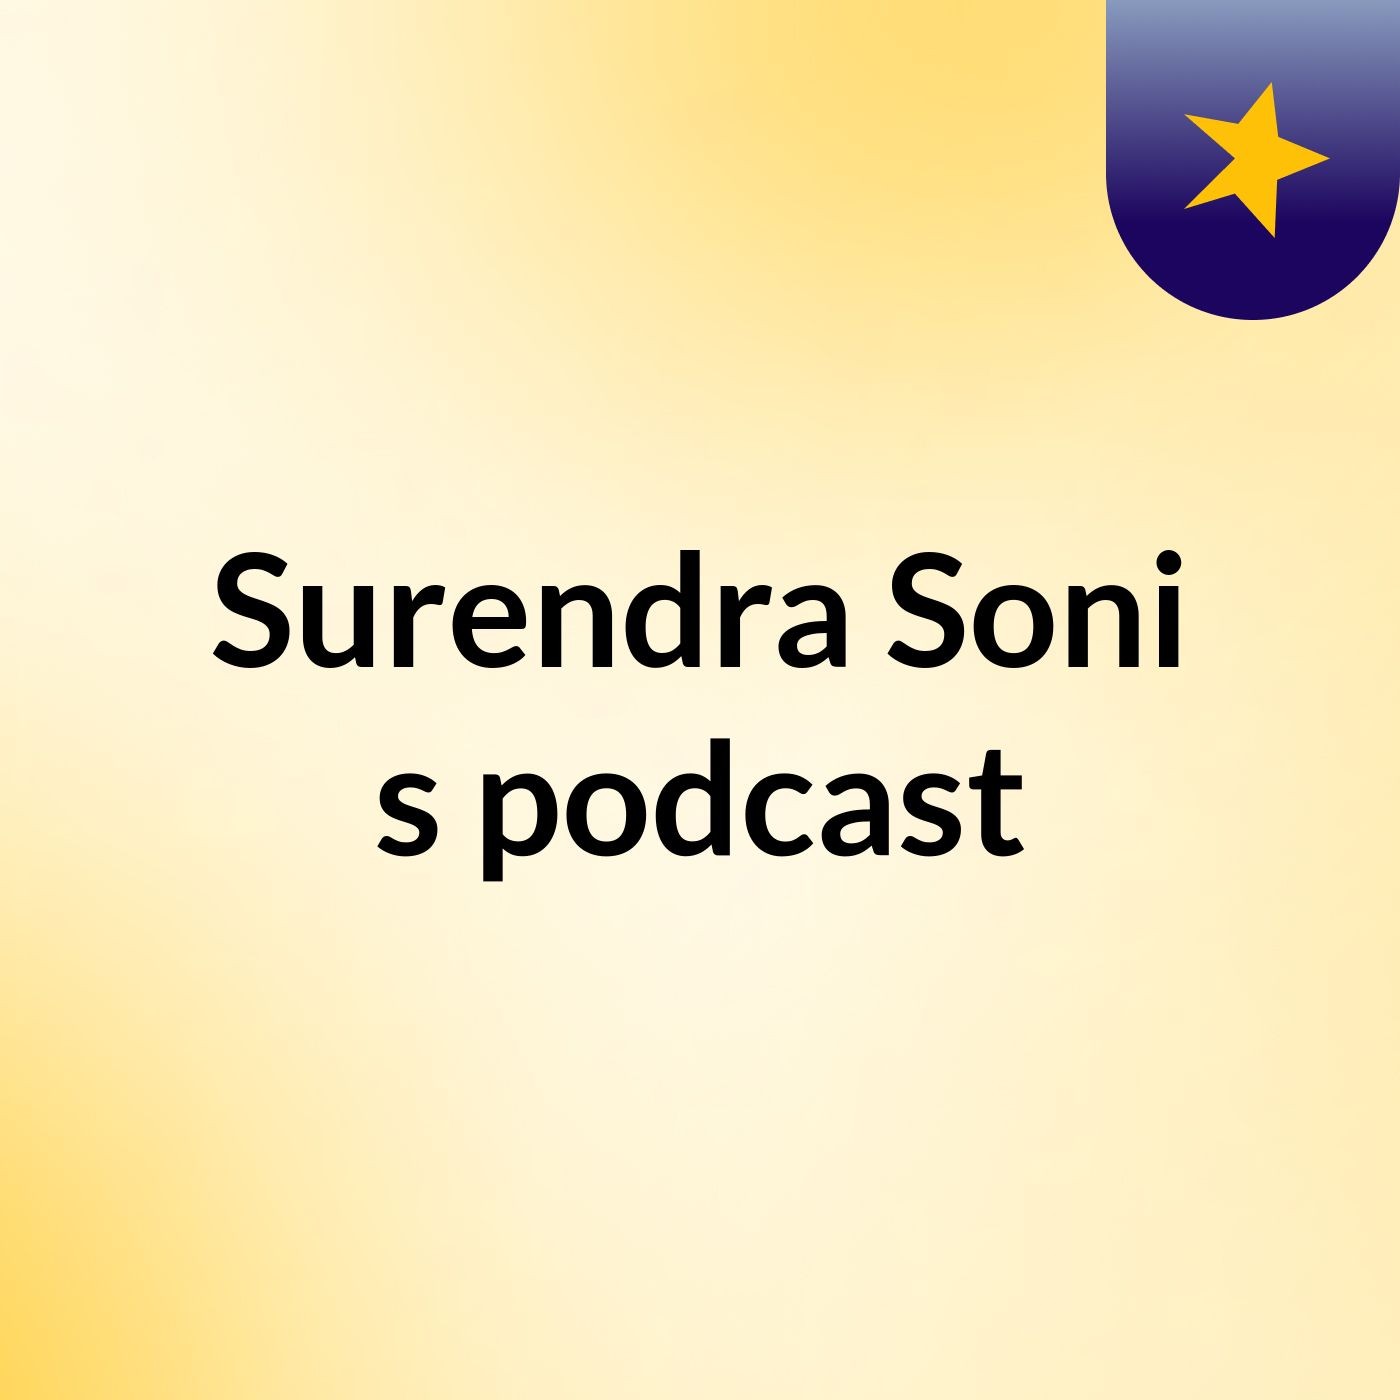 Surendra Soni's podcast